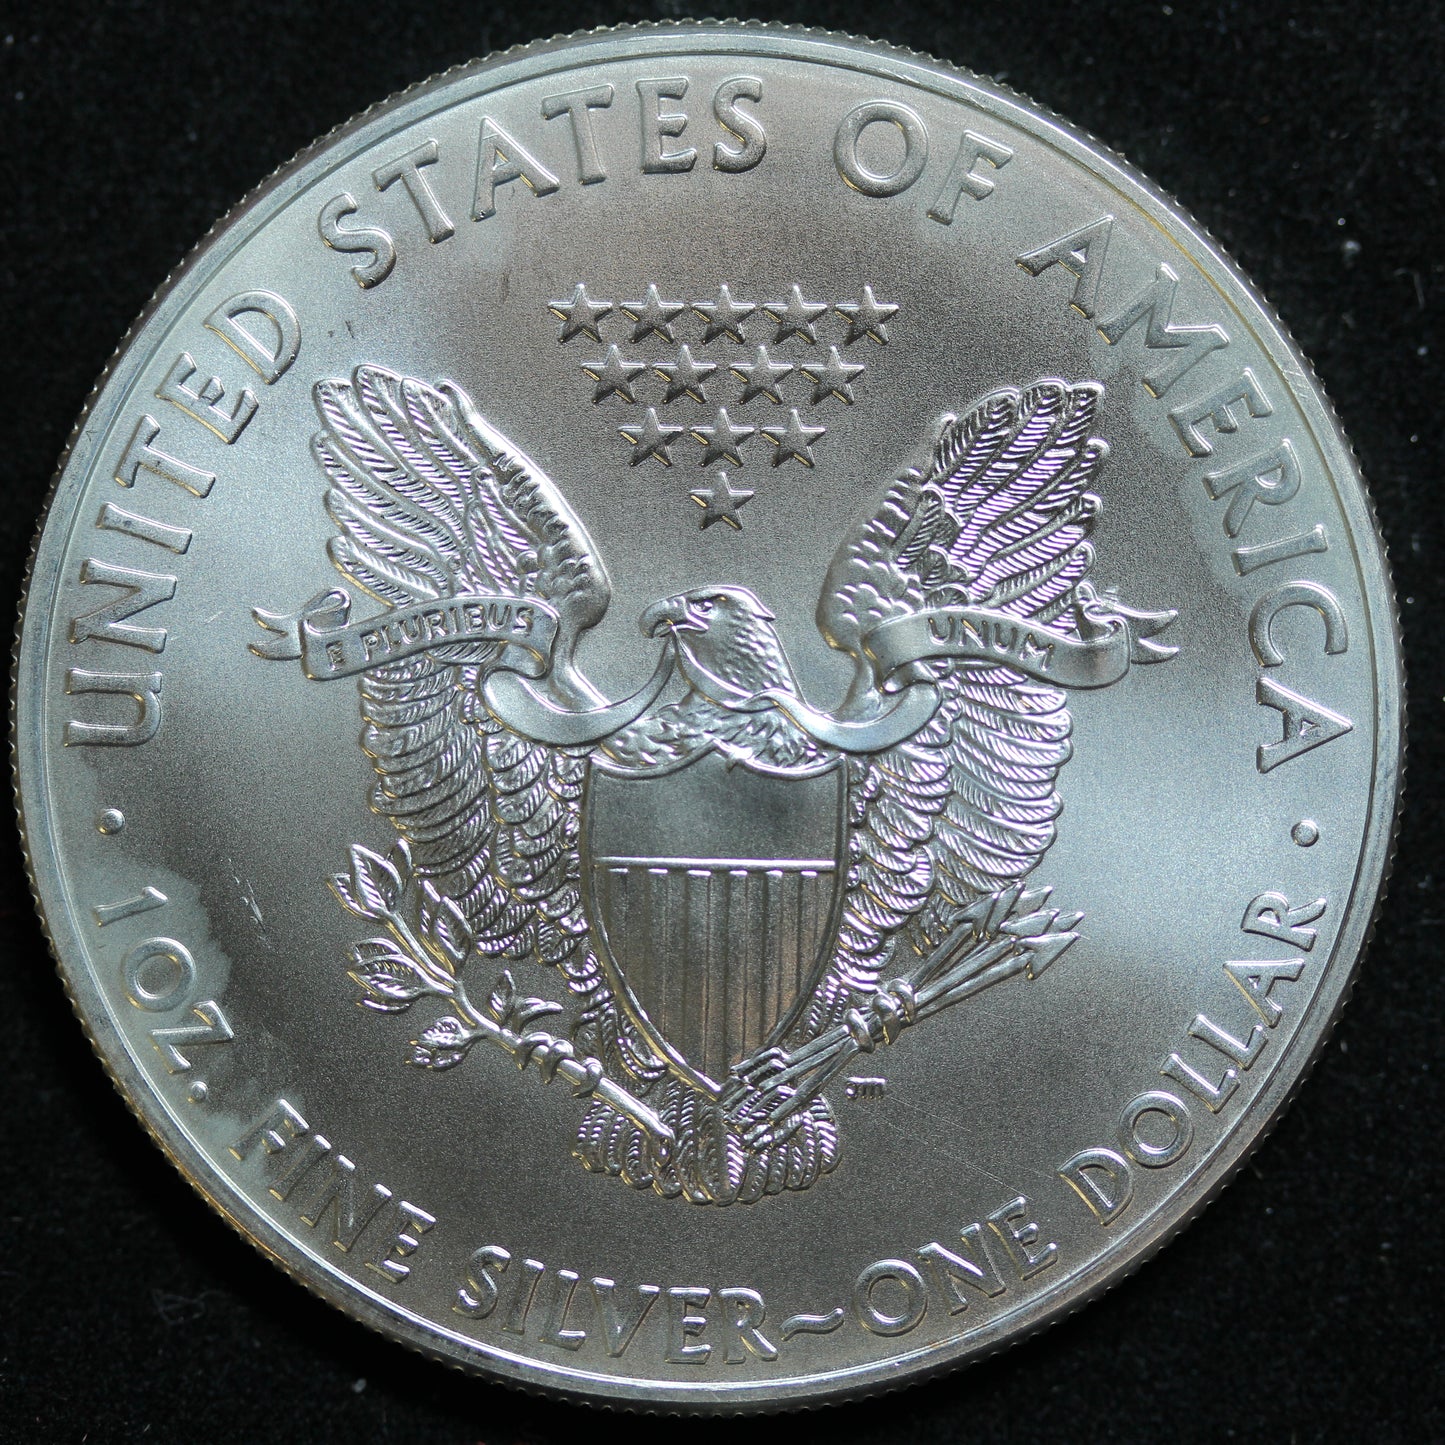 2012 American Silver Eagle 1 oz .999 Fine Silver Coin Marks/Spots